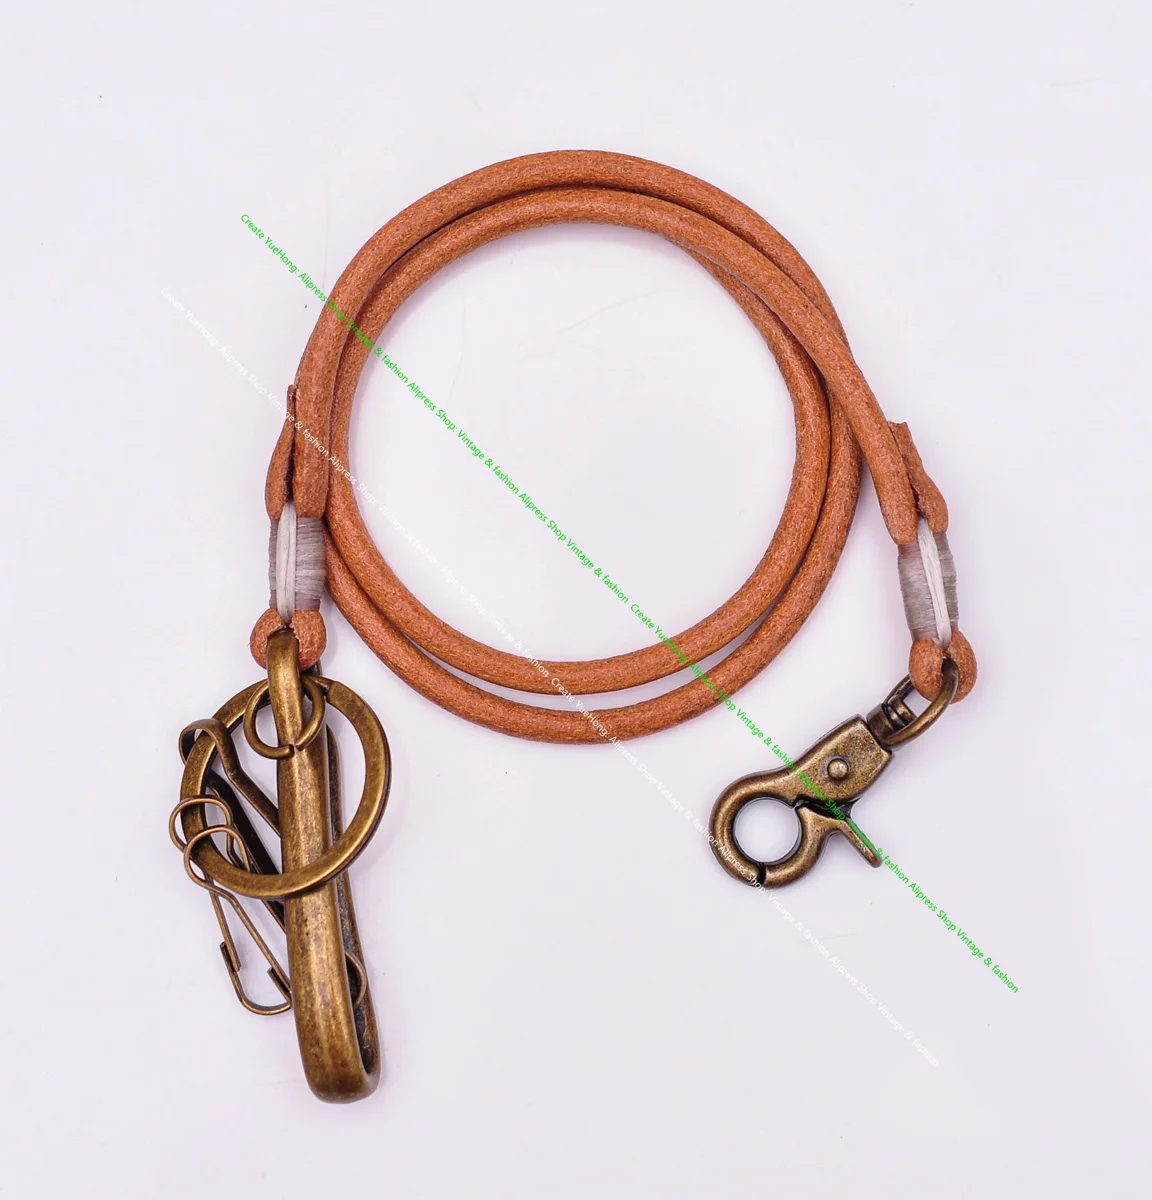 Цепочка для ключей длинный прочный кожаный кошелек из латуни 5 мм с U образным